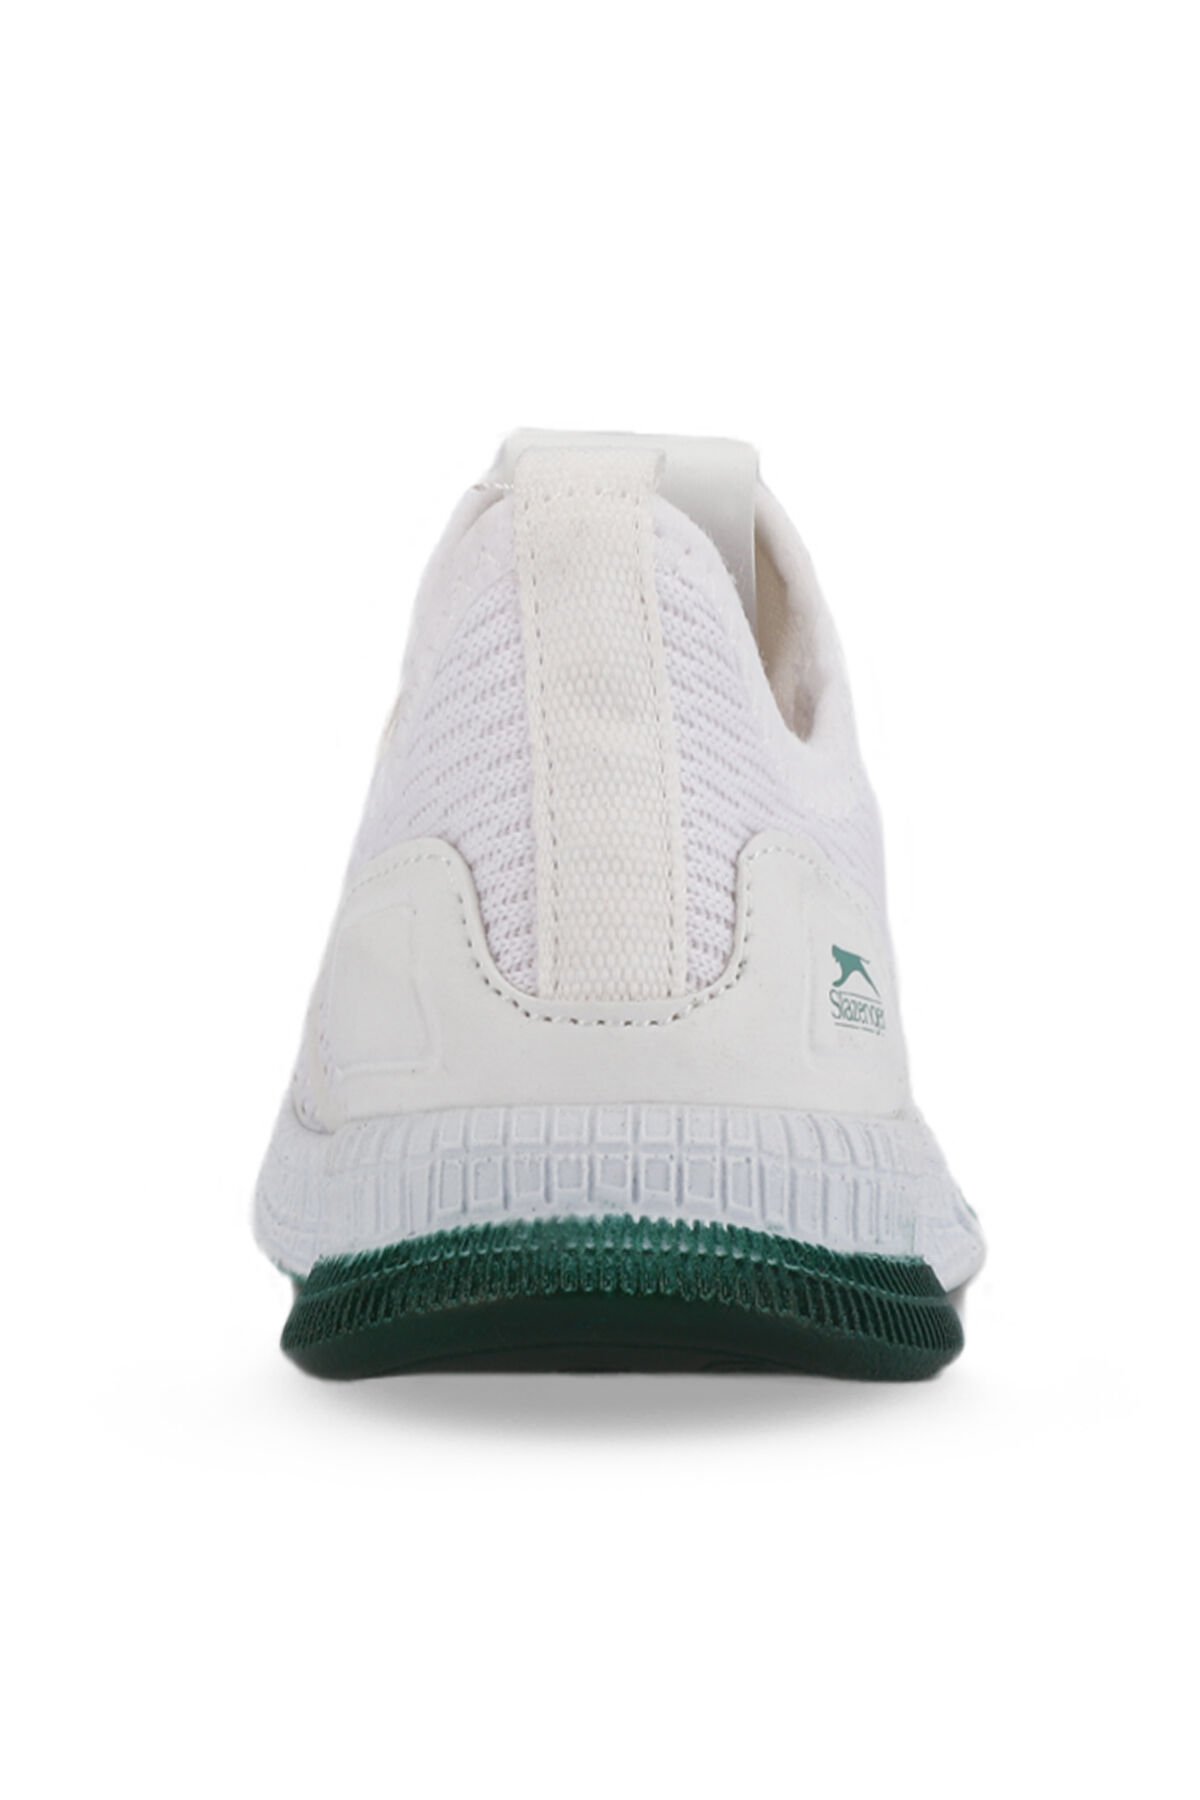 EXPO Sneaker Unisex Çocuk Ayakkabı Beyaz / Yeşil - Thumbnail